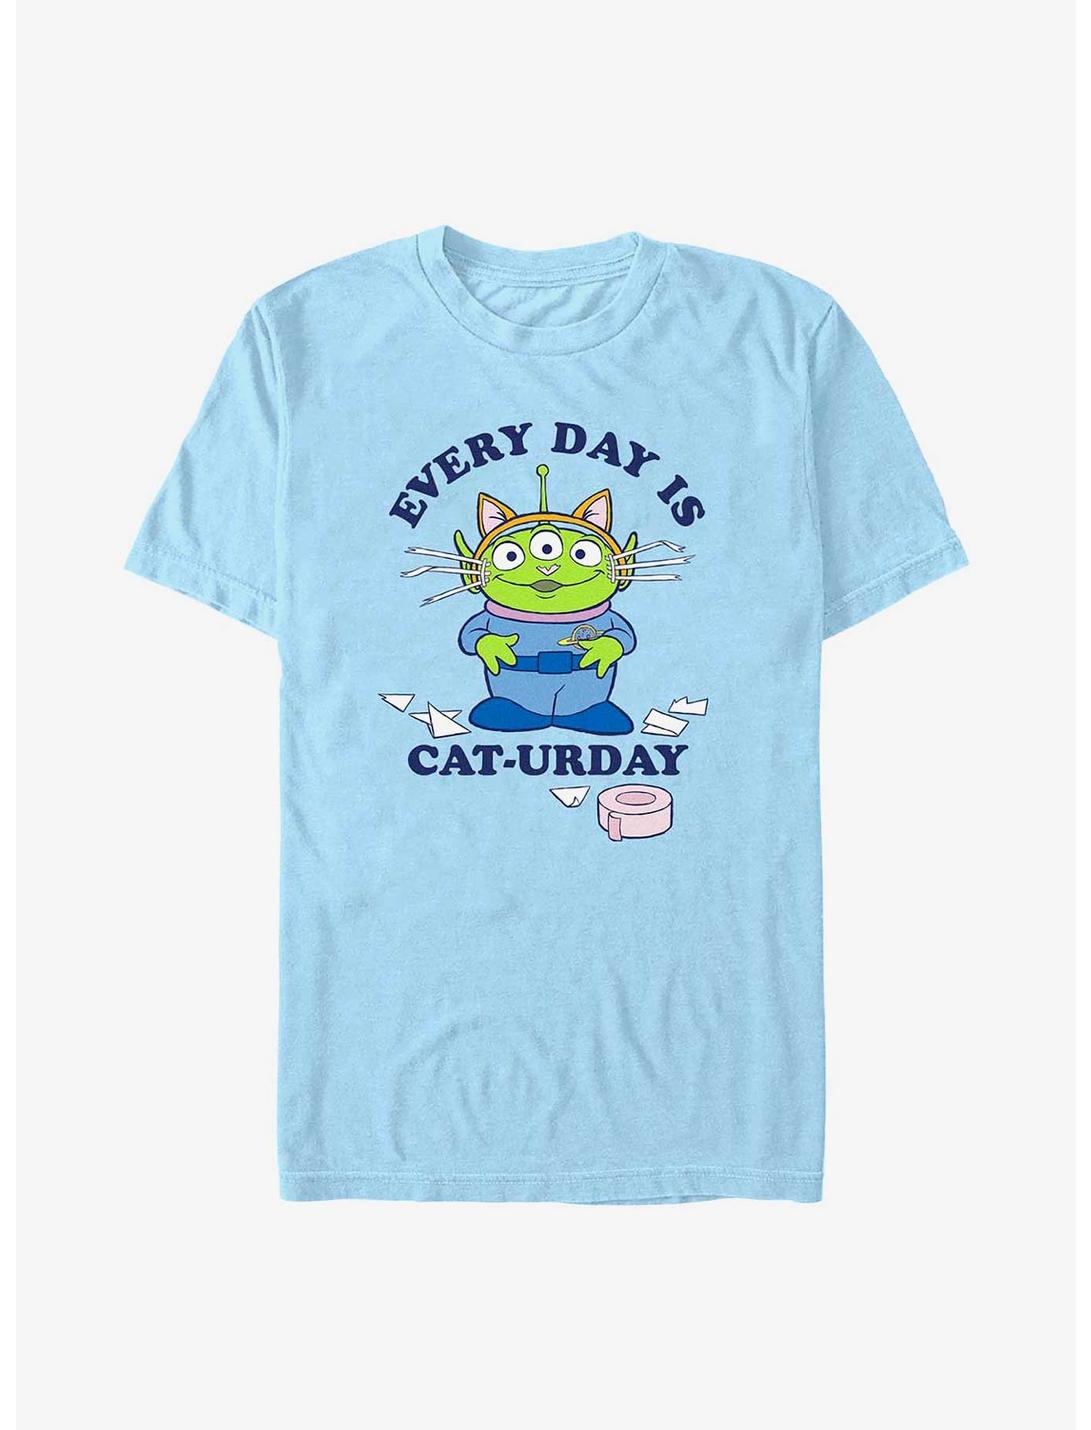 Disney Pixar Toy Story Alien Cat-Urday T-Shirt, LT BLUE, hi-res